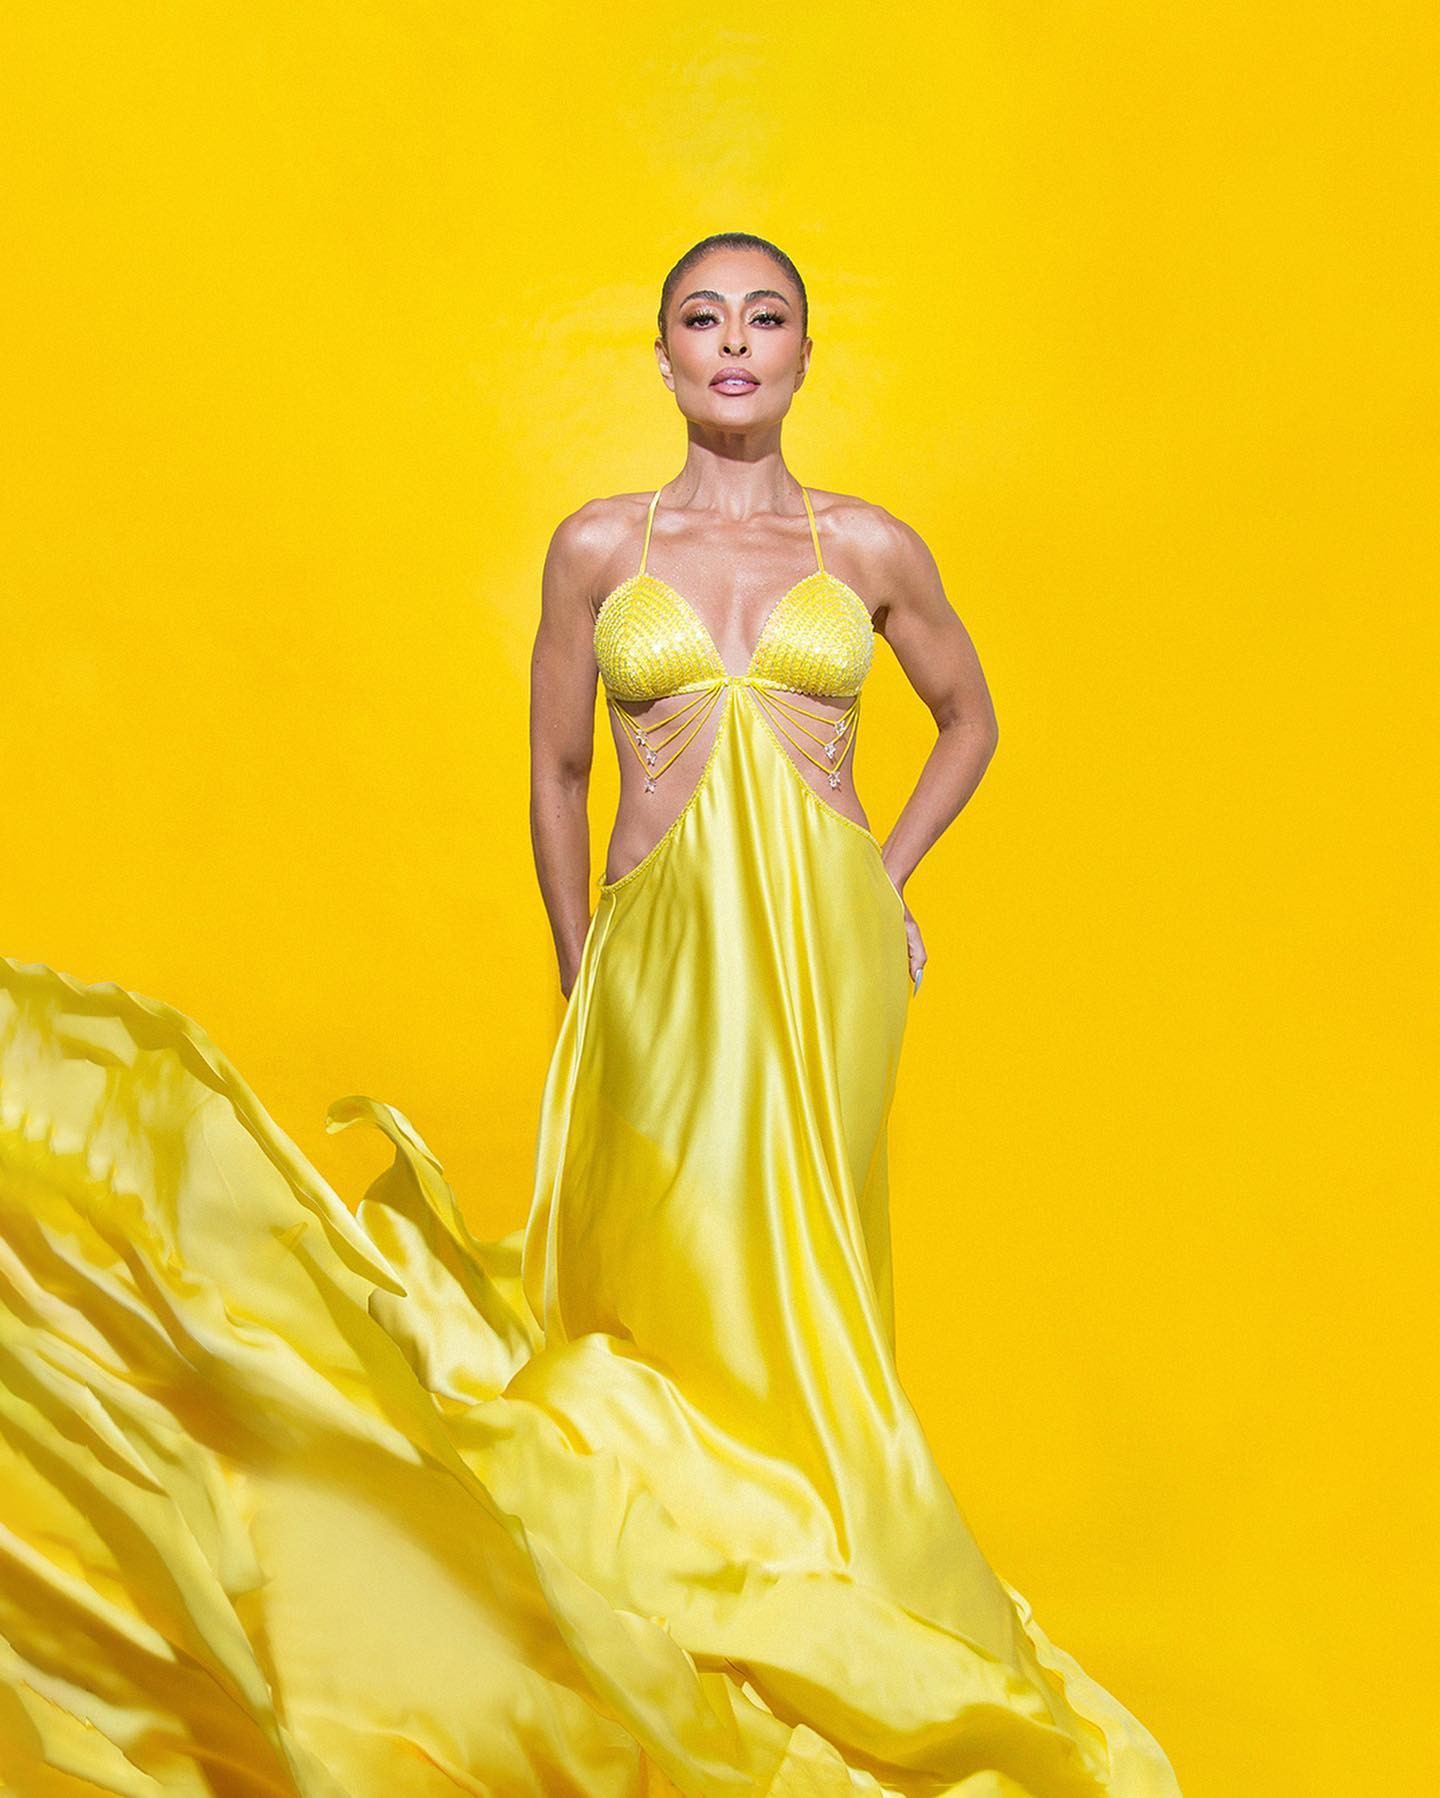 Juliana Paes surge poderosa com look amarelo na web (Foto: reprodução/ Instagram)